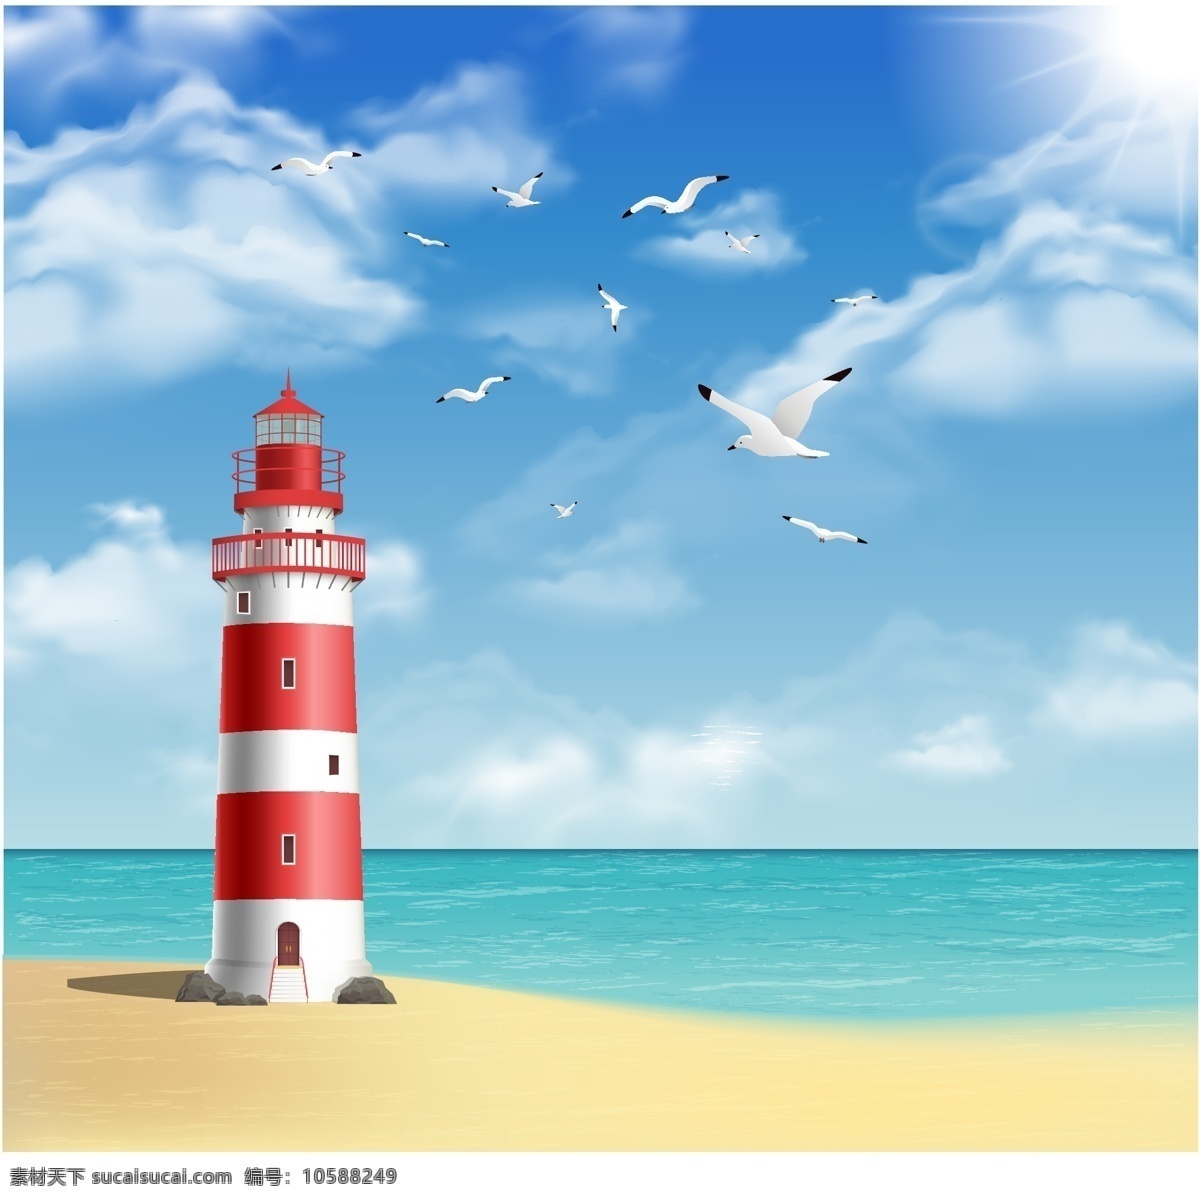 灯塔 海洋 大海 海鸥 海岛 海水 海浪 白云 蓝天 蓝色海洋 自然风景 交通 设计素材 卡通风景 自然景观 自然风光